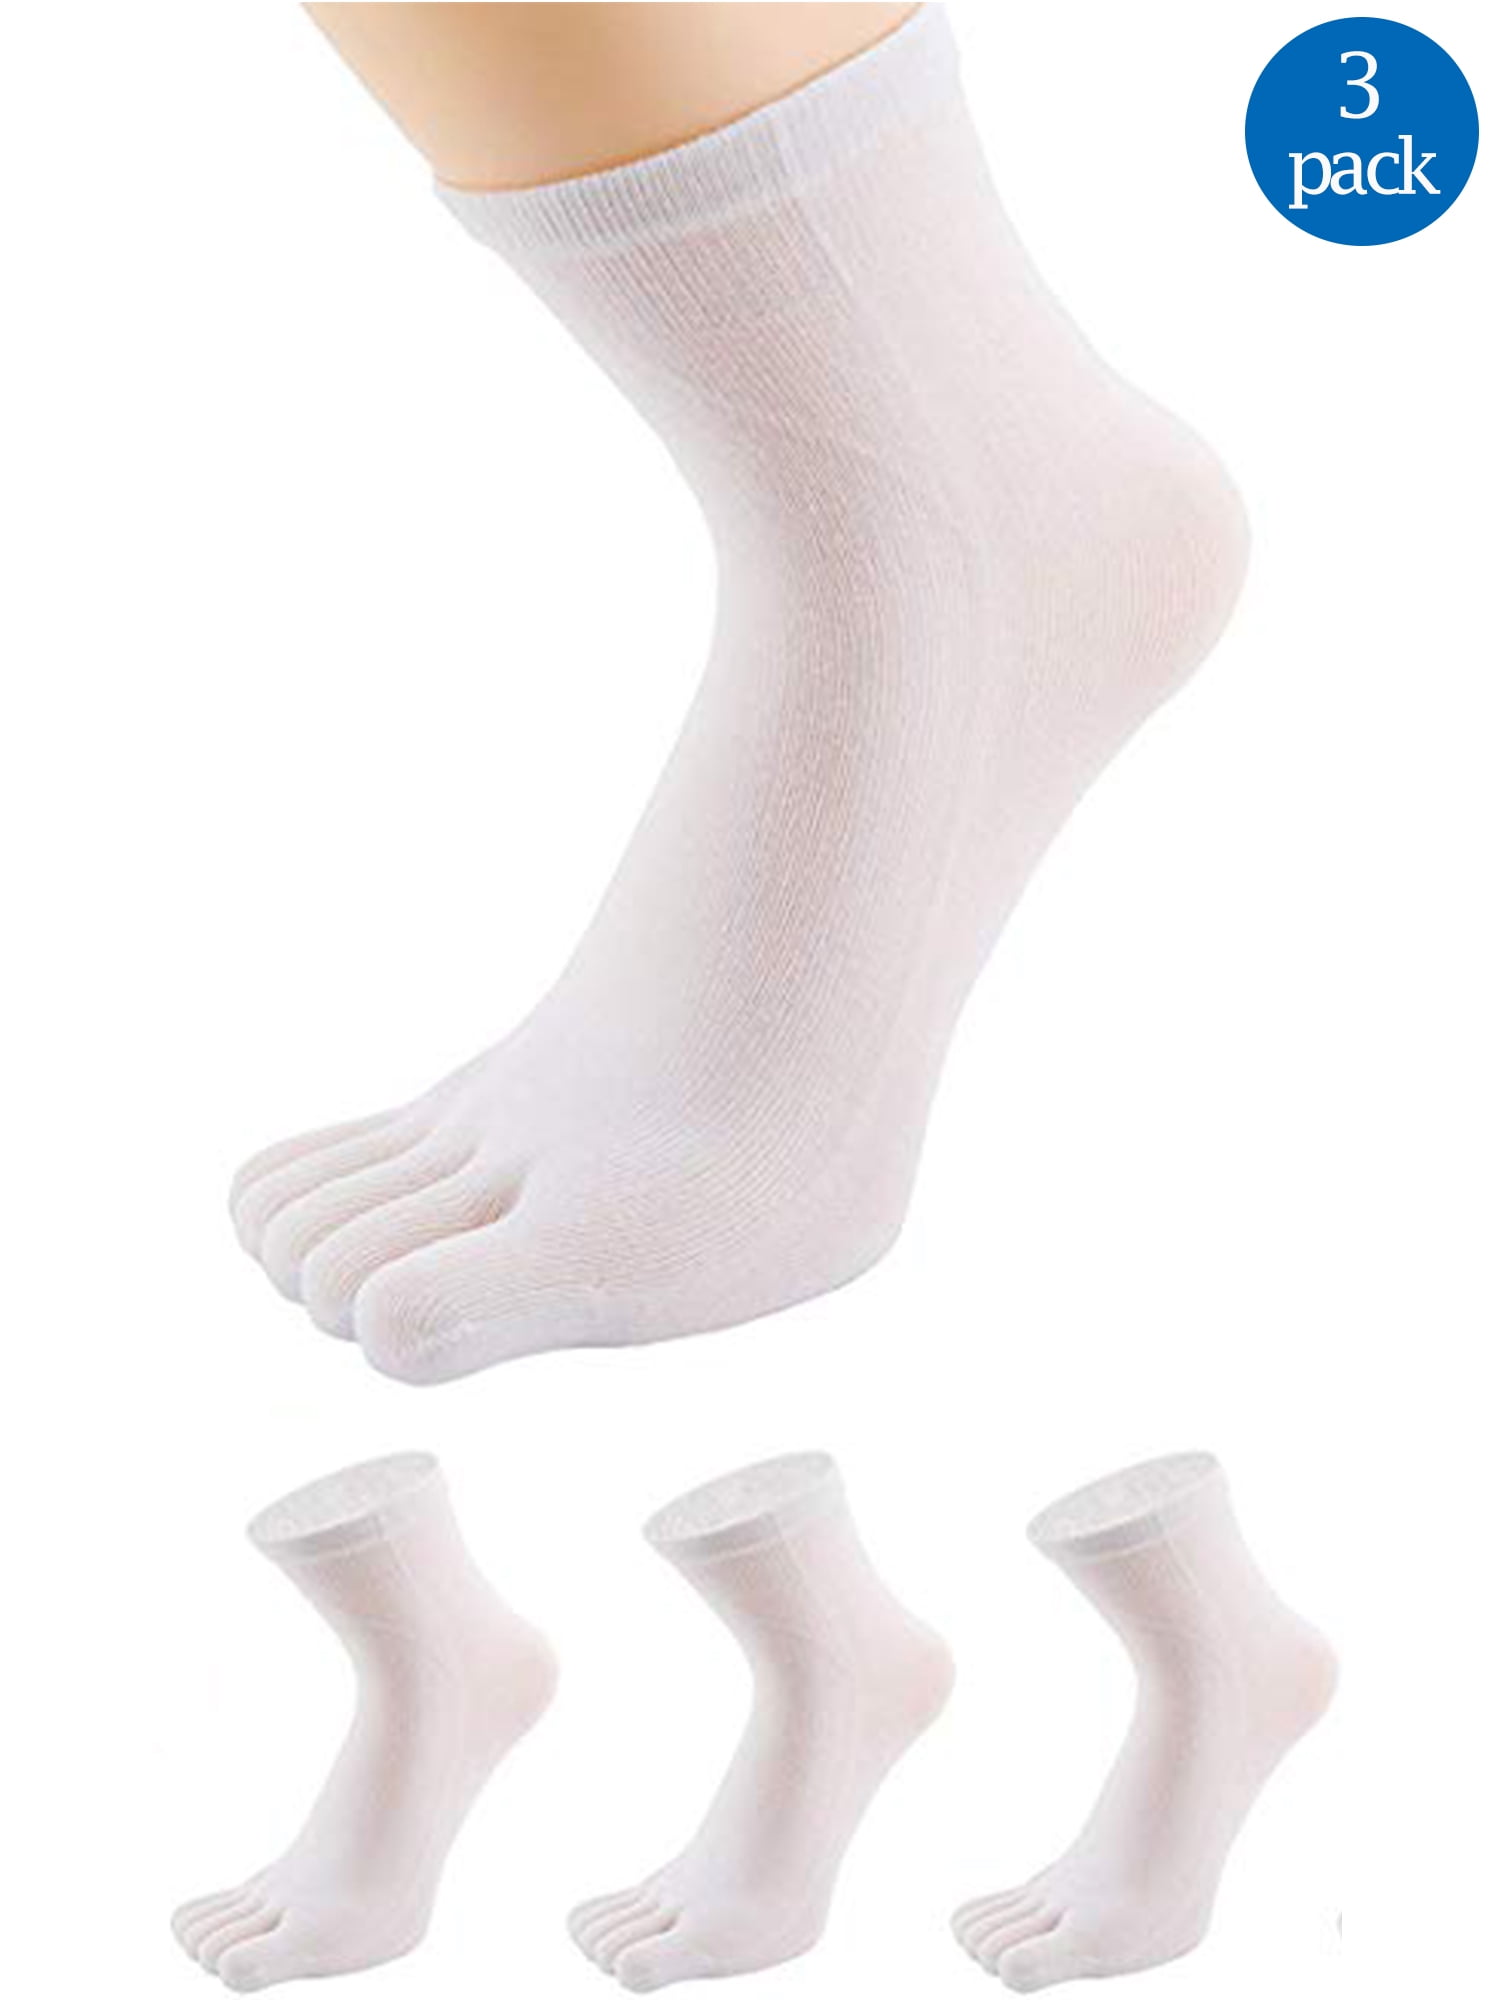 mens running toe socks